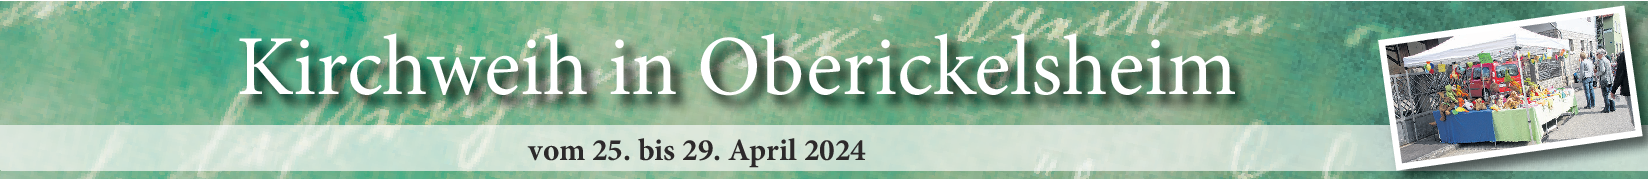 Kirchweih in Oberickelsheim: Programm bis in den Mai